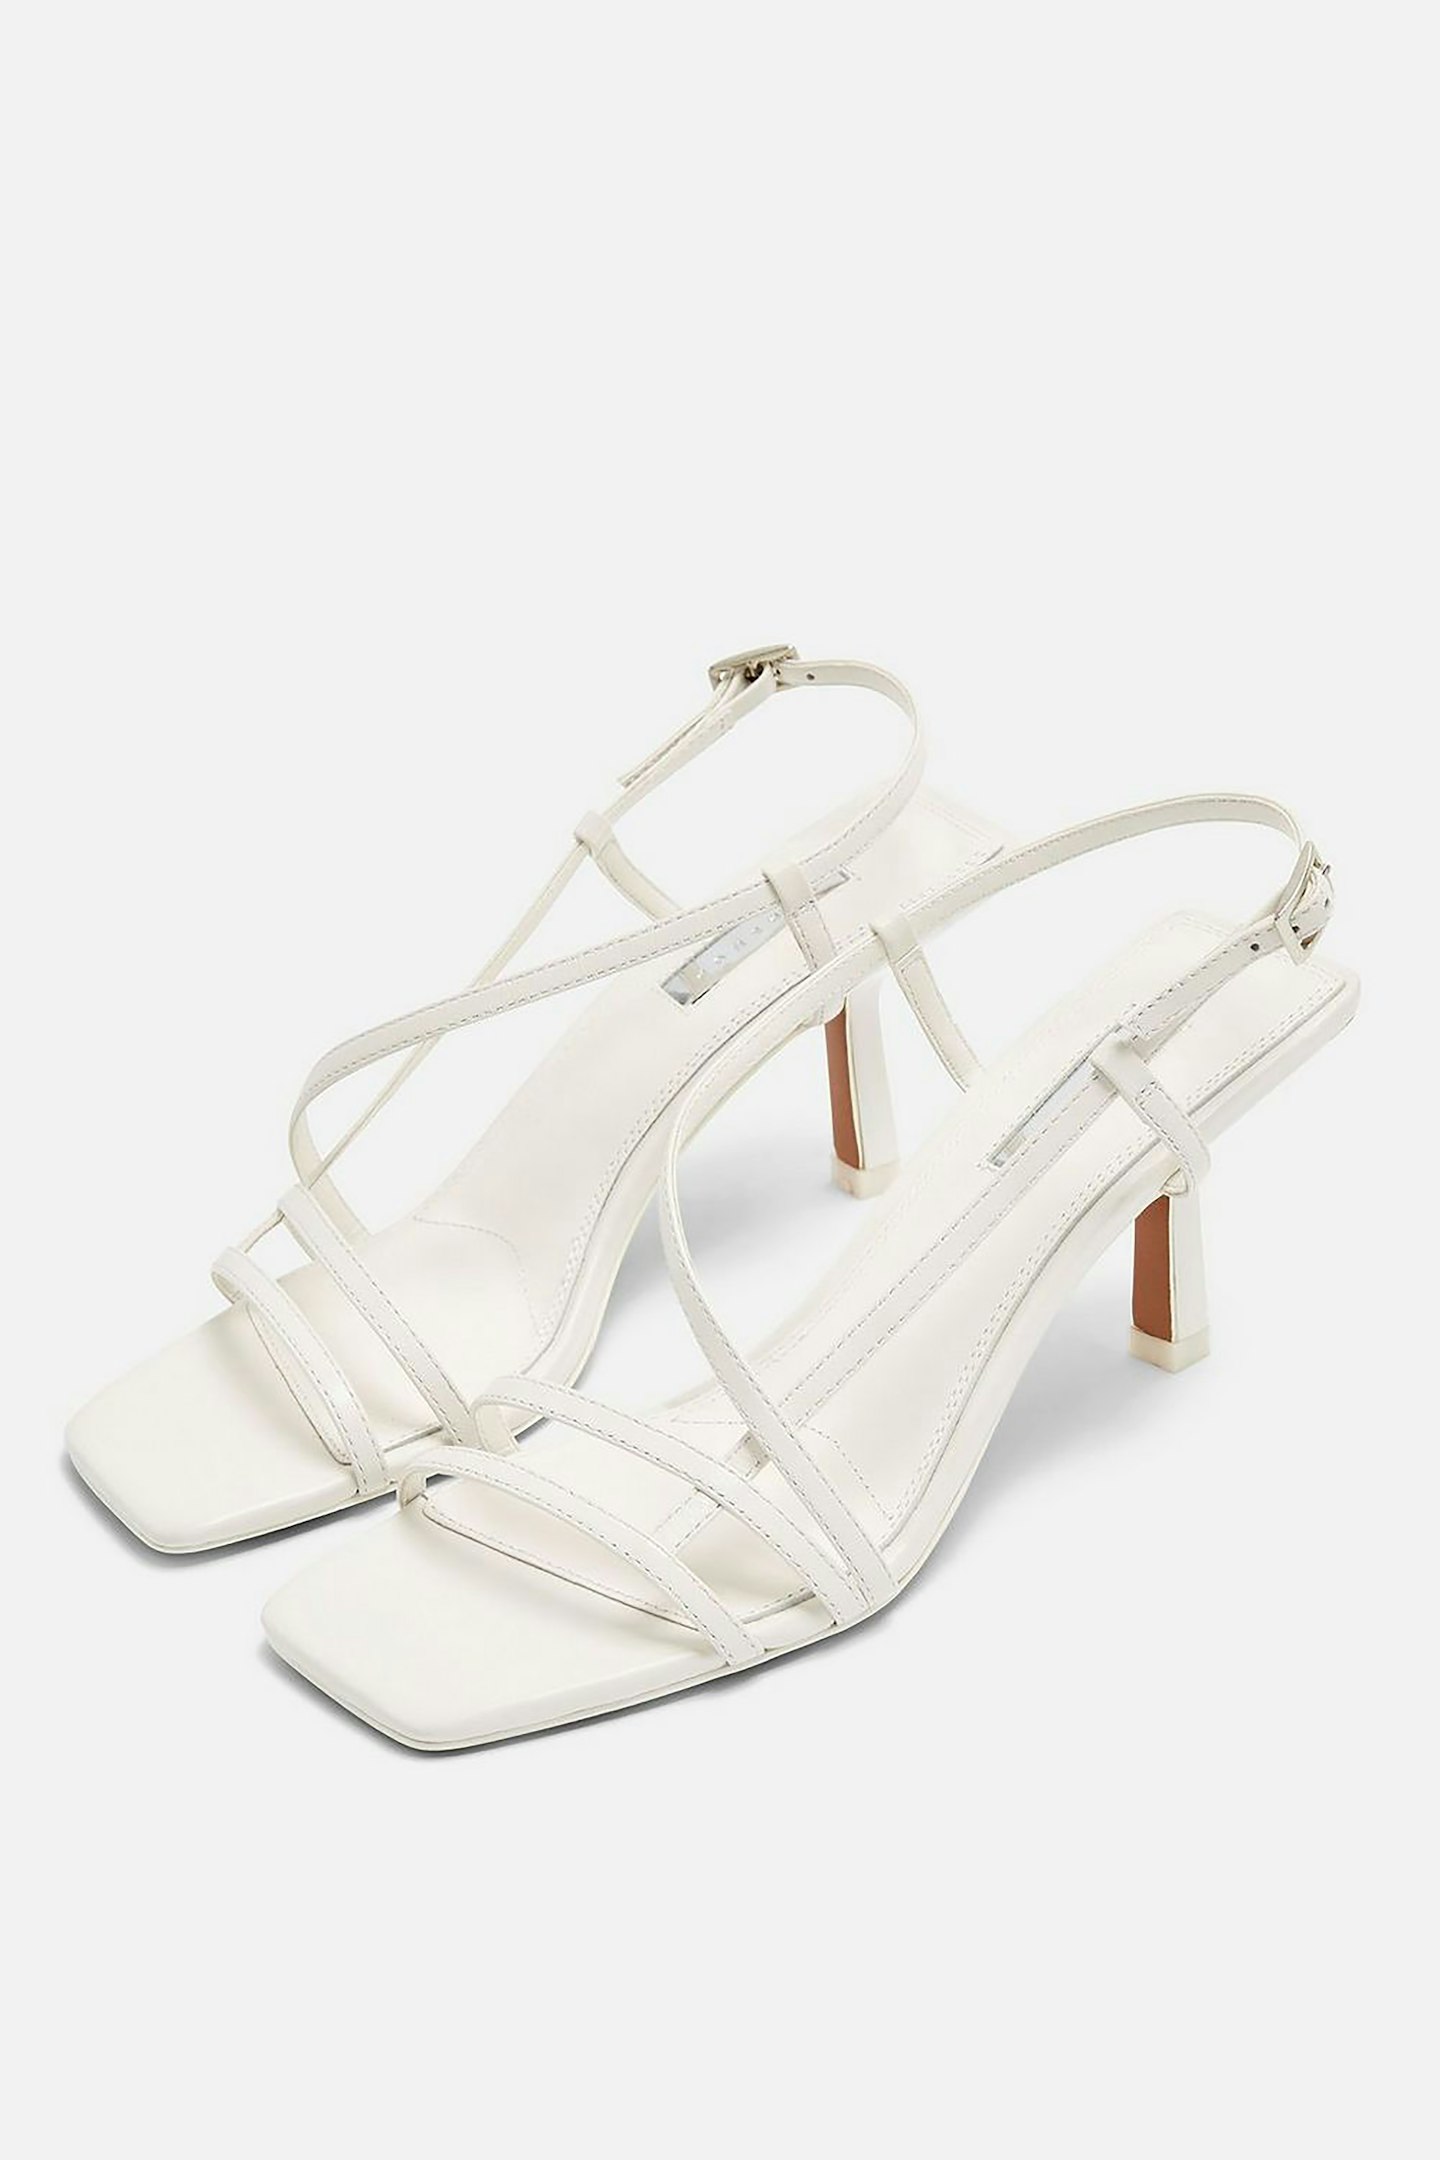 STRIPPY White Heeled Sandals, £39